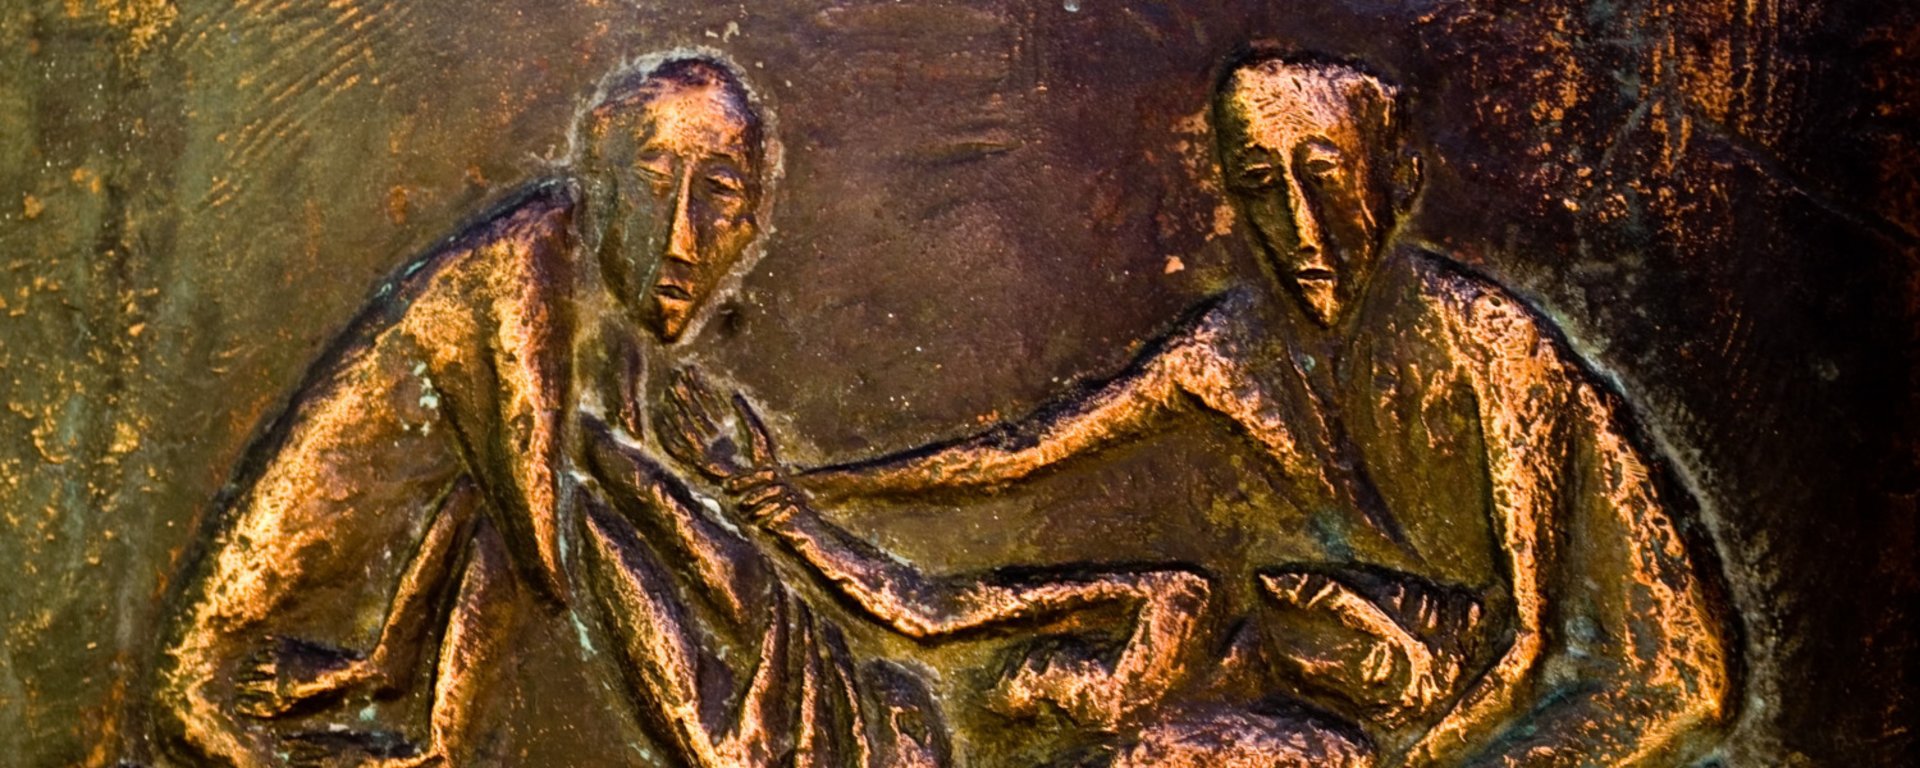 Detail vom Taufbecken :: Jesu Grablegung :: Bild © Jack Simanzik